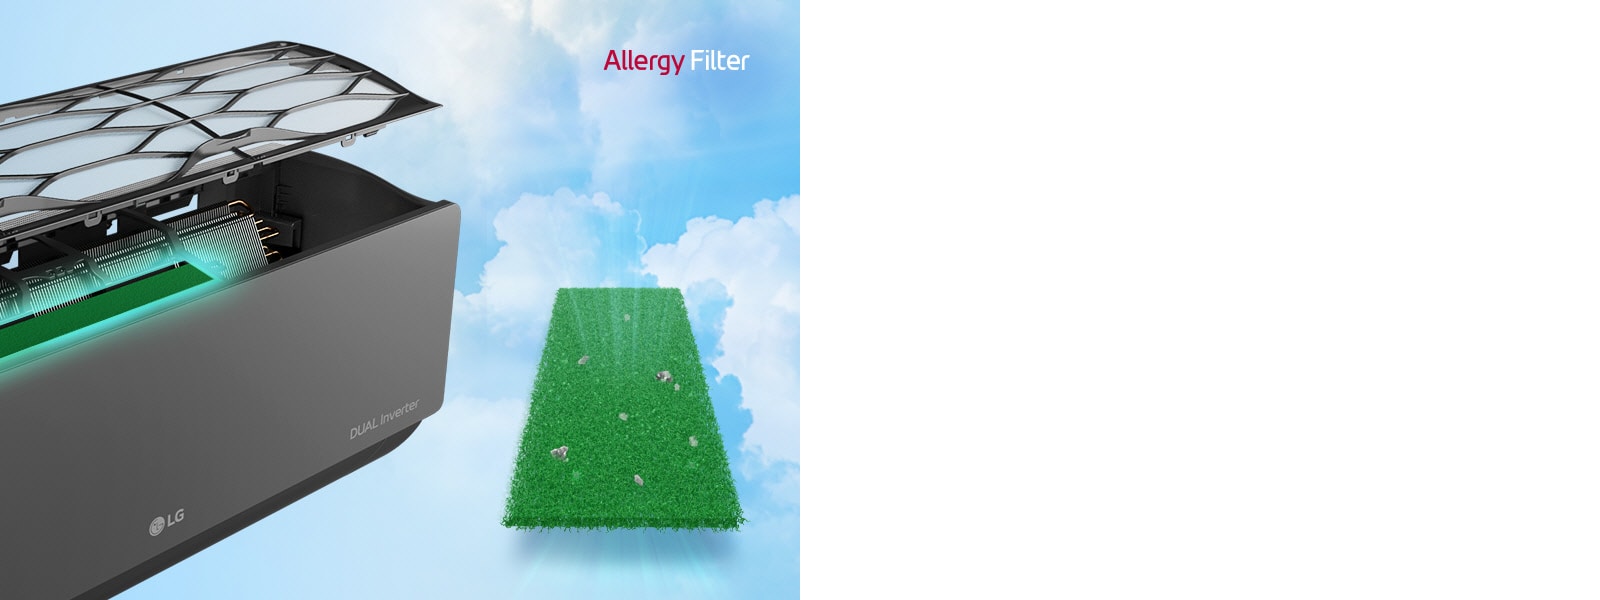 Bočni ugao klima uređaja je prikazan sa filterima koji lebde iznad da bi se prikazao filter za alergije instaliran unutra. Pored mašine je ceo zeleni filter protiv alergija sa grinjama uhvaćenim u njemu. Logo filtera za alergije se nalazi u gornjem desnom uglu.